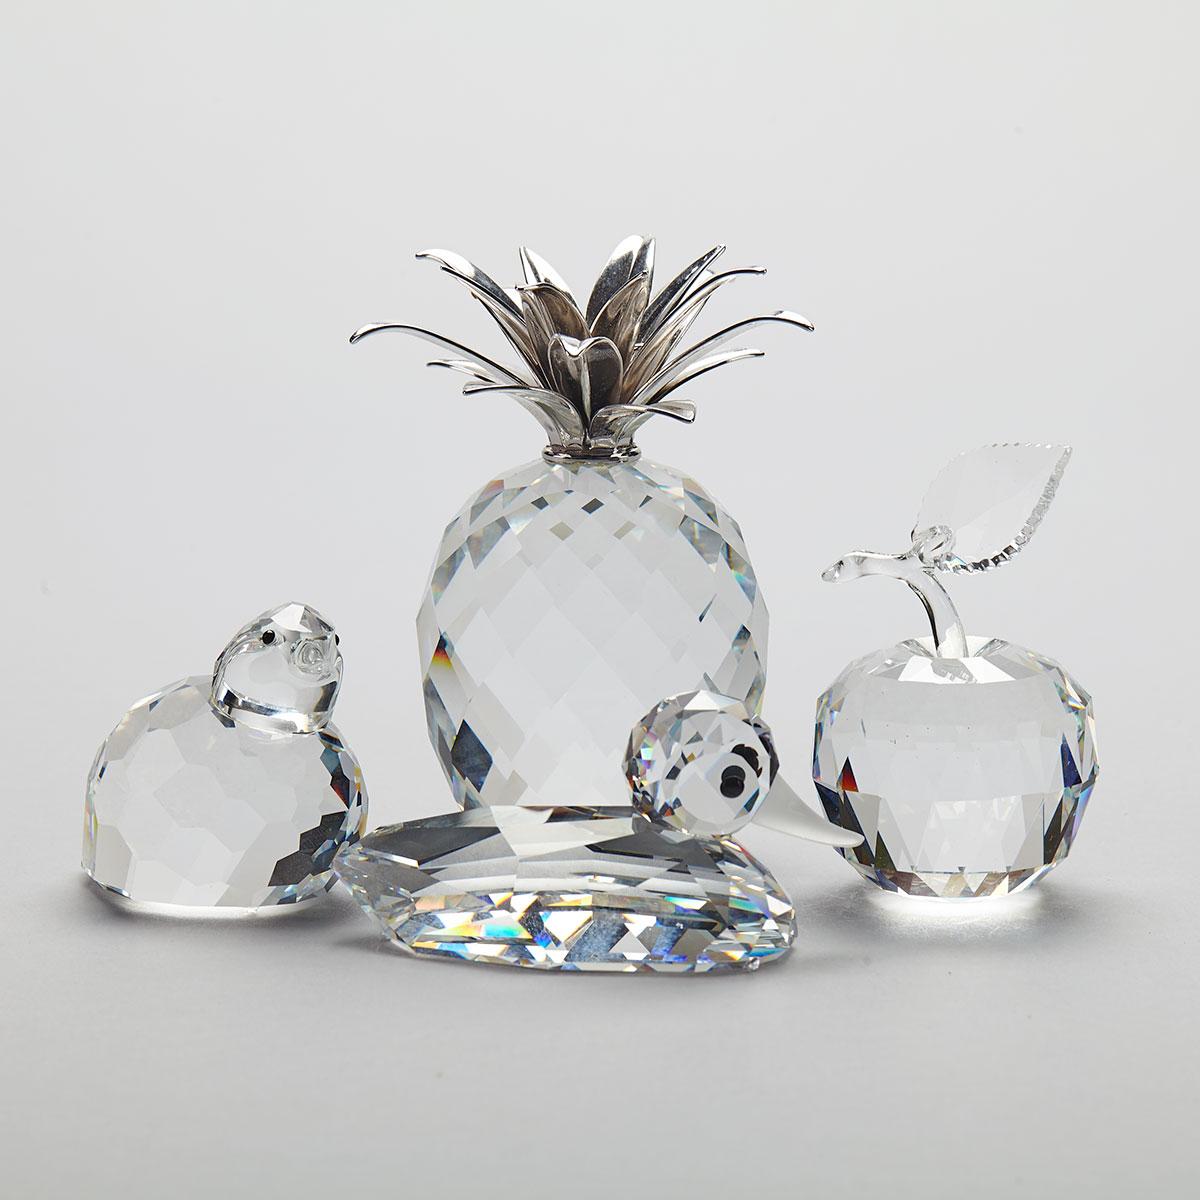 Four Swarovski Crystal Figurines, late 20th century